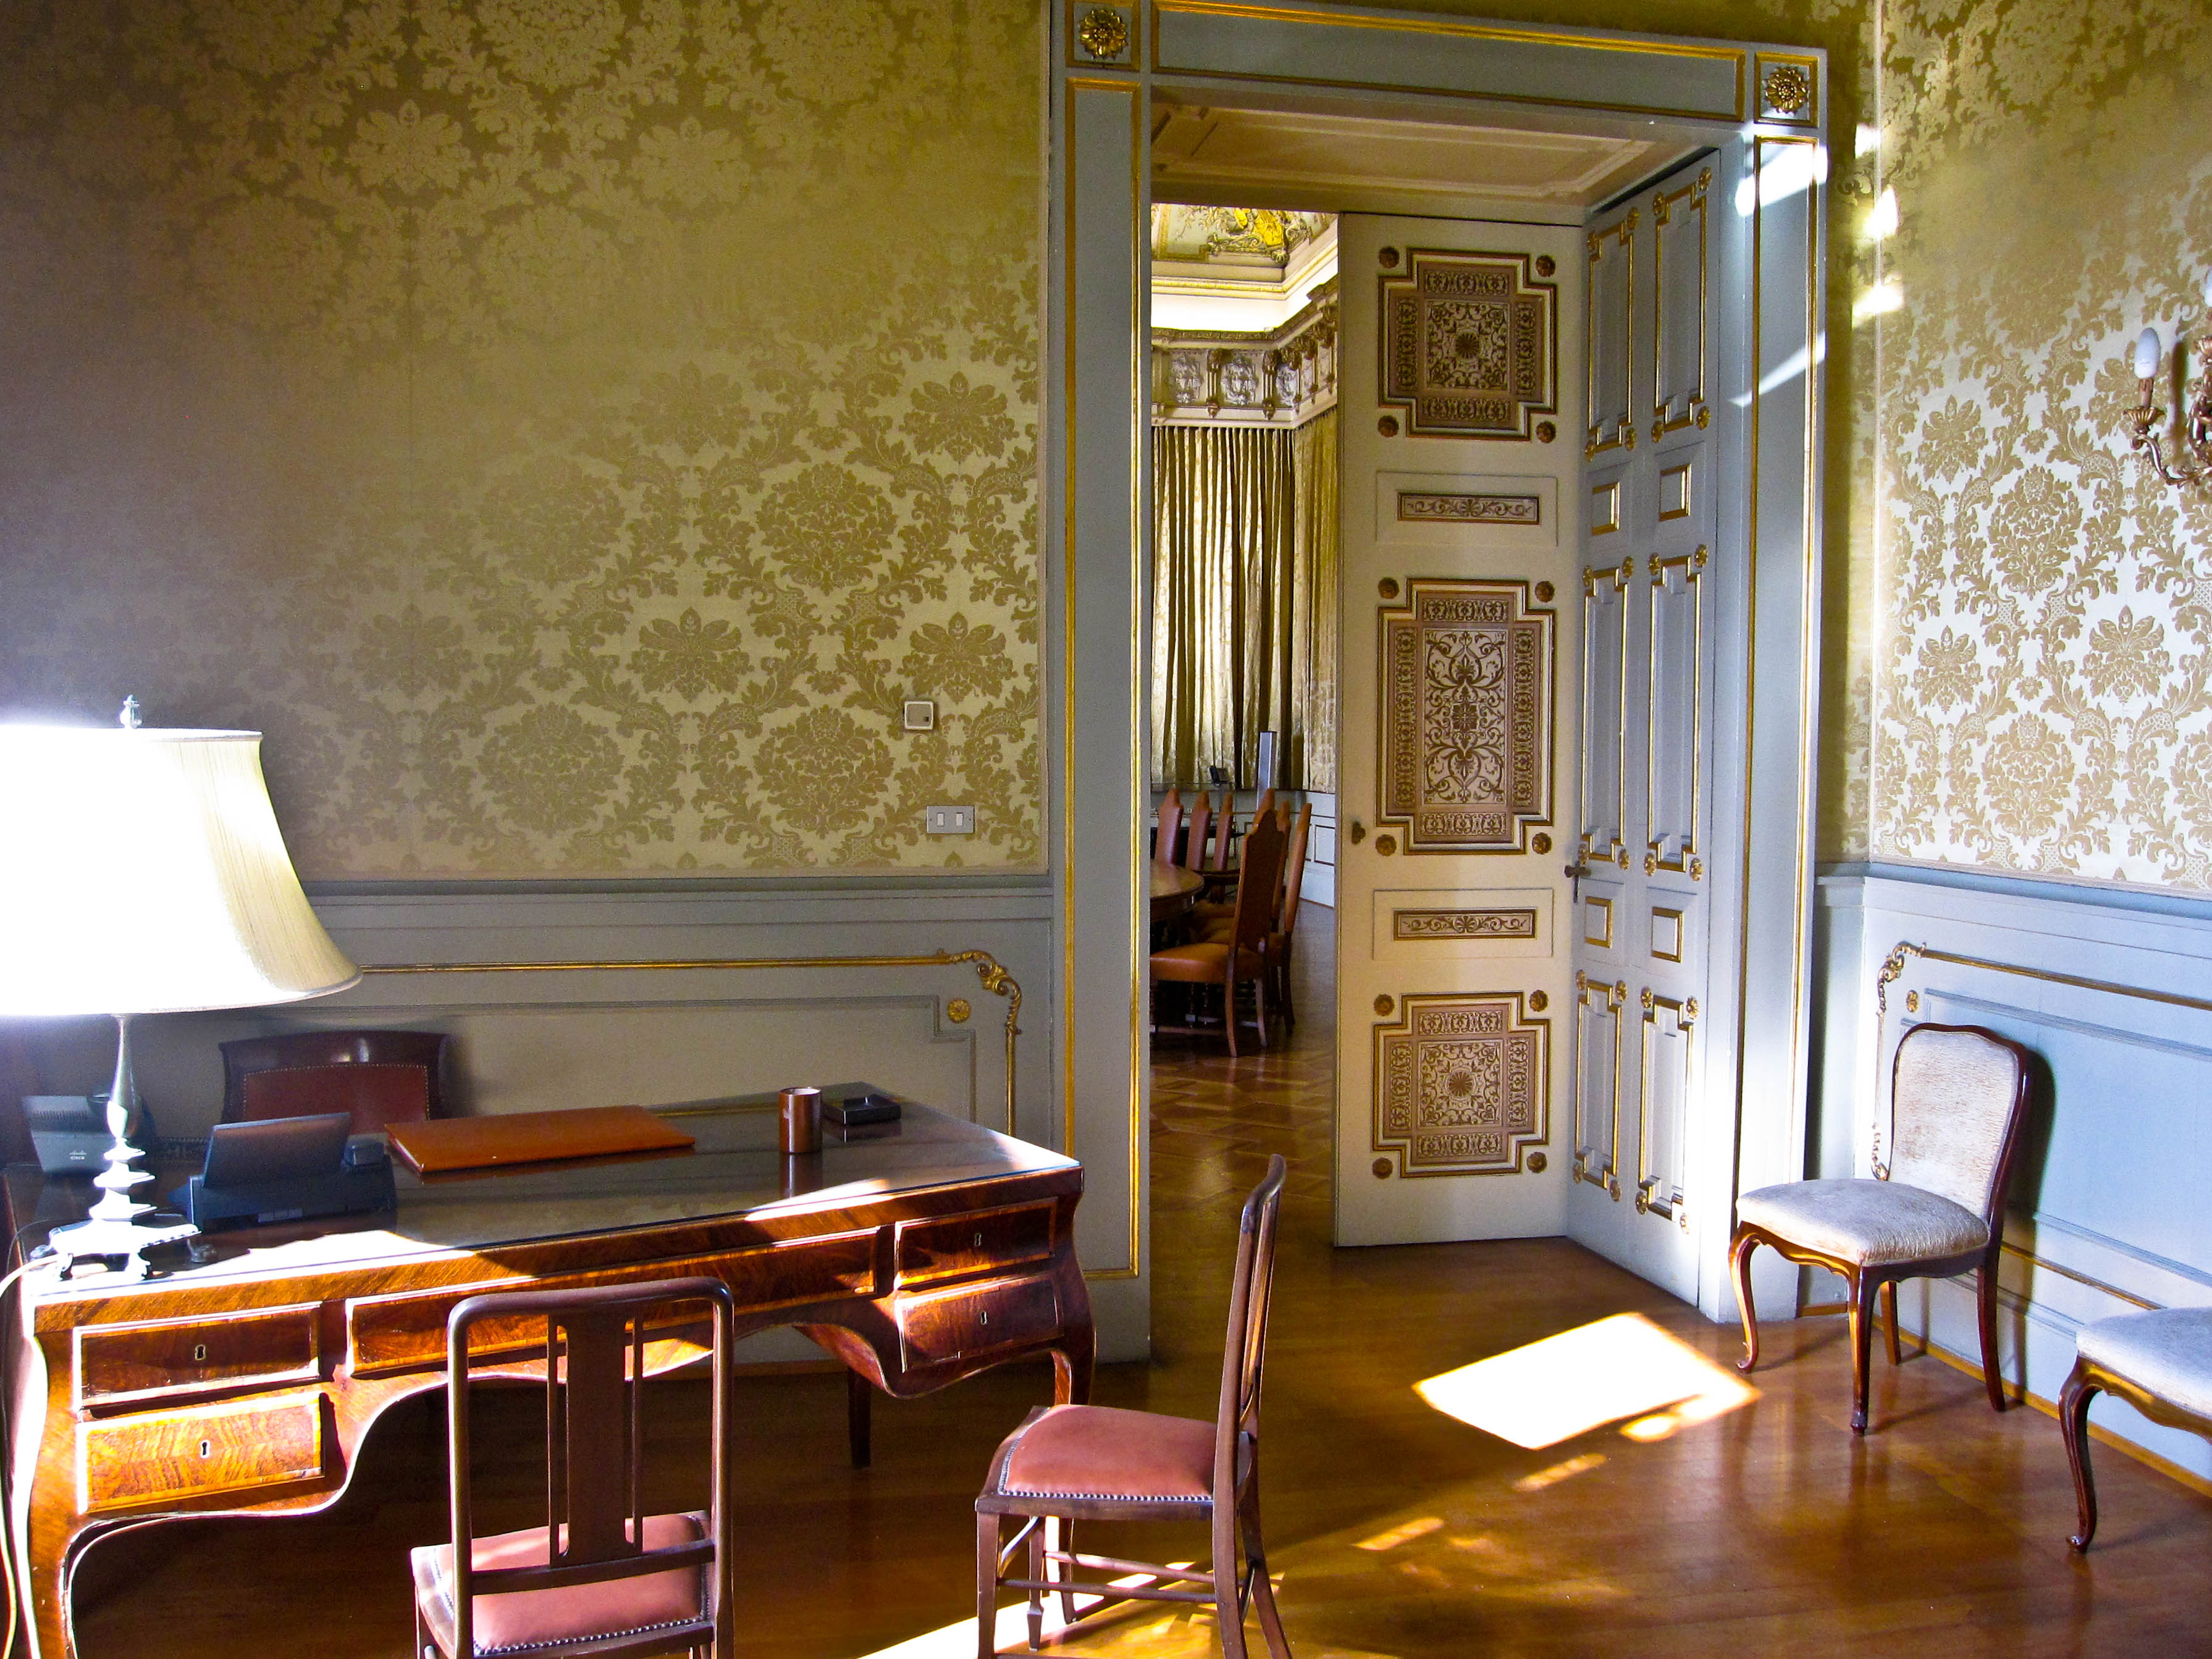 Armando Mancini, Palazzo Sirignano (Napoli) - particolare di una sala, 2010, fotografia digitale